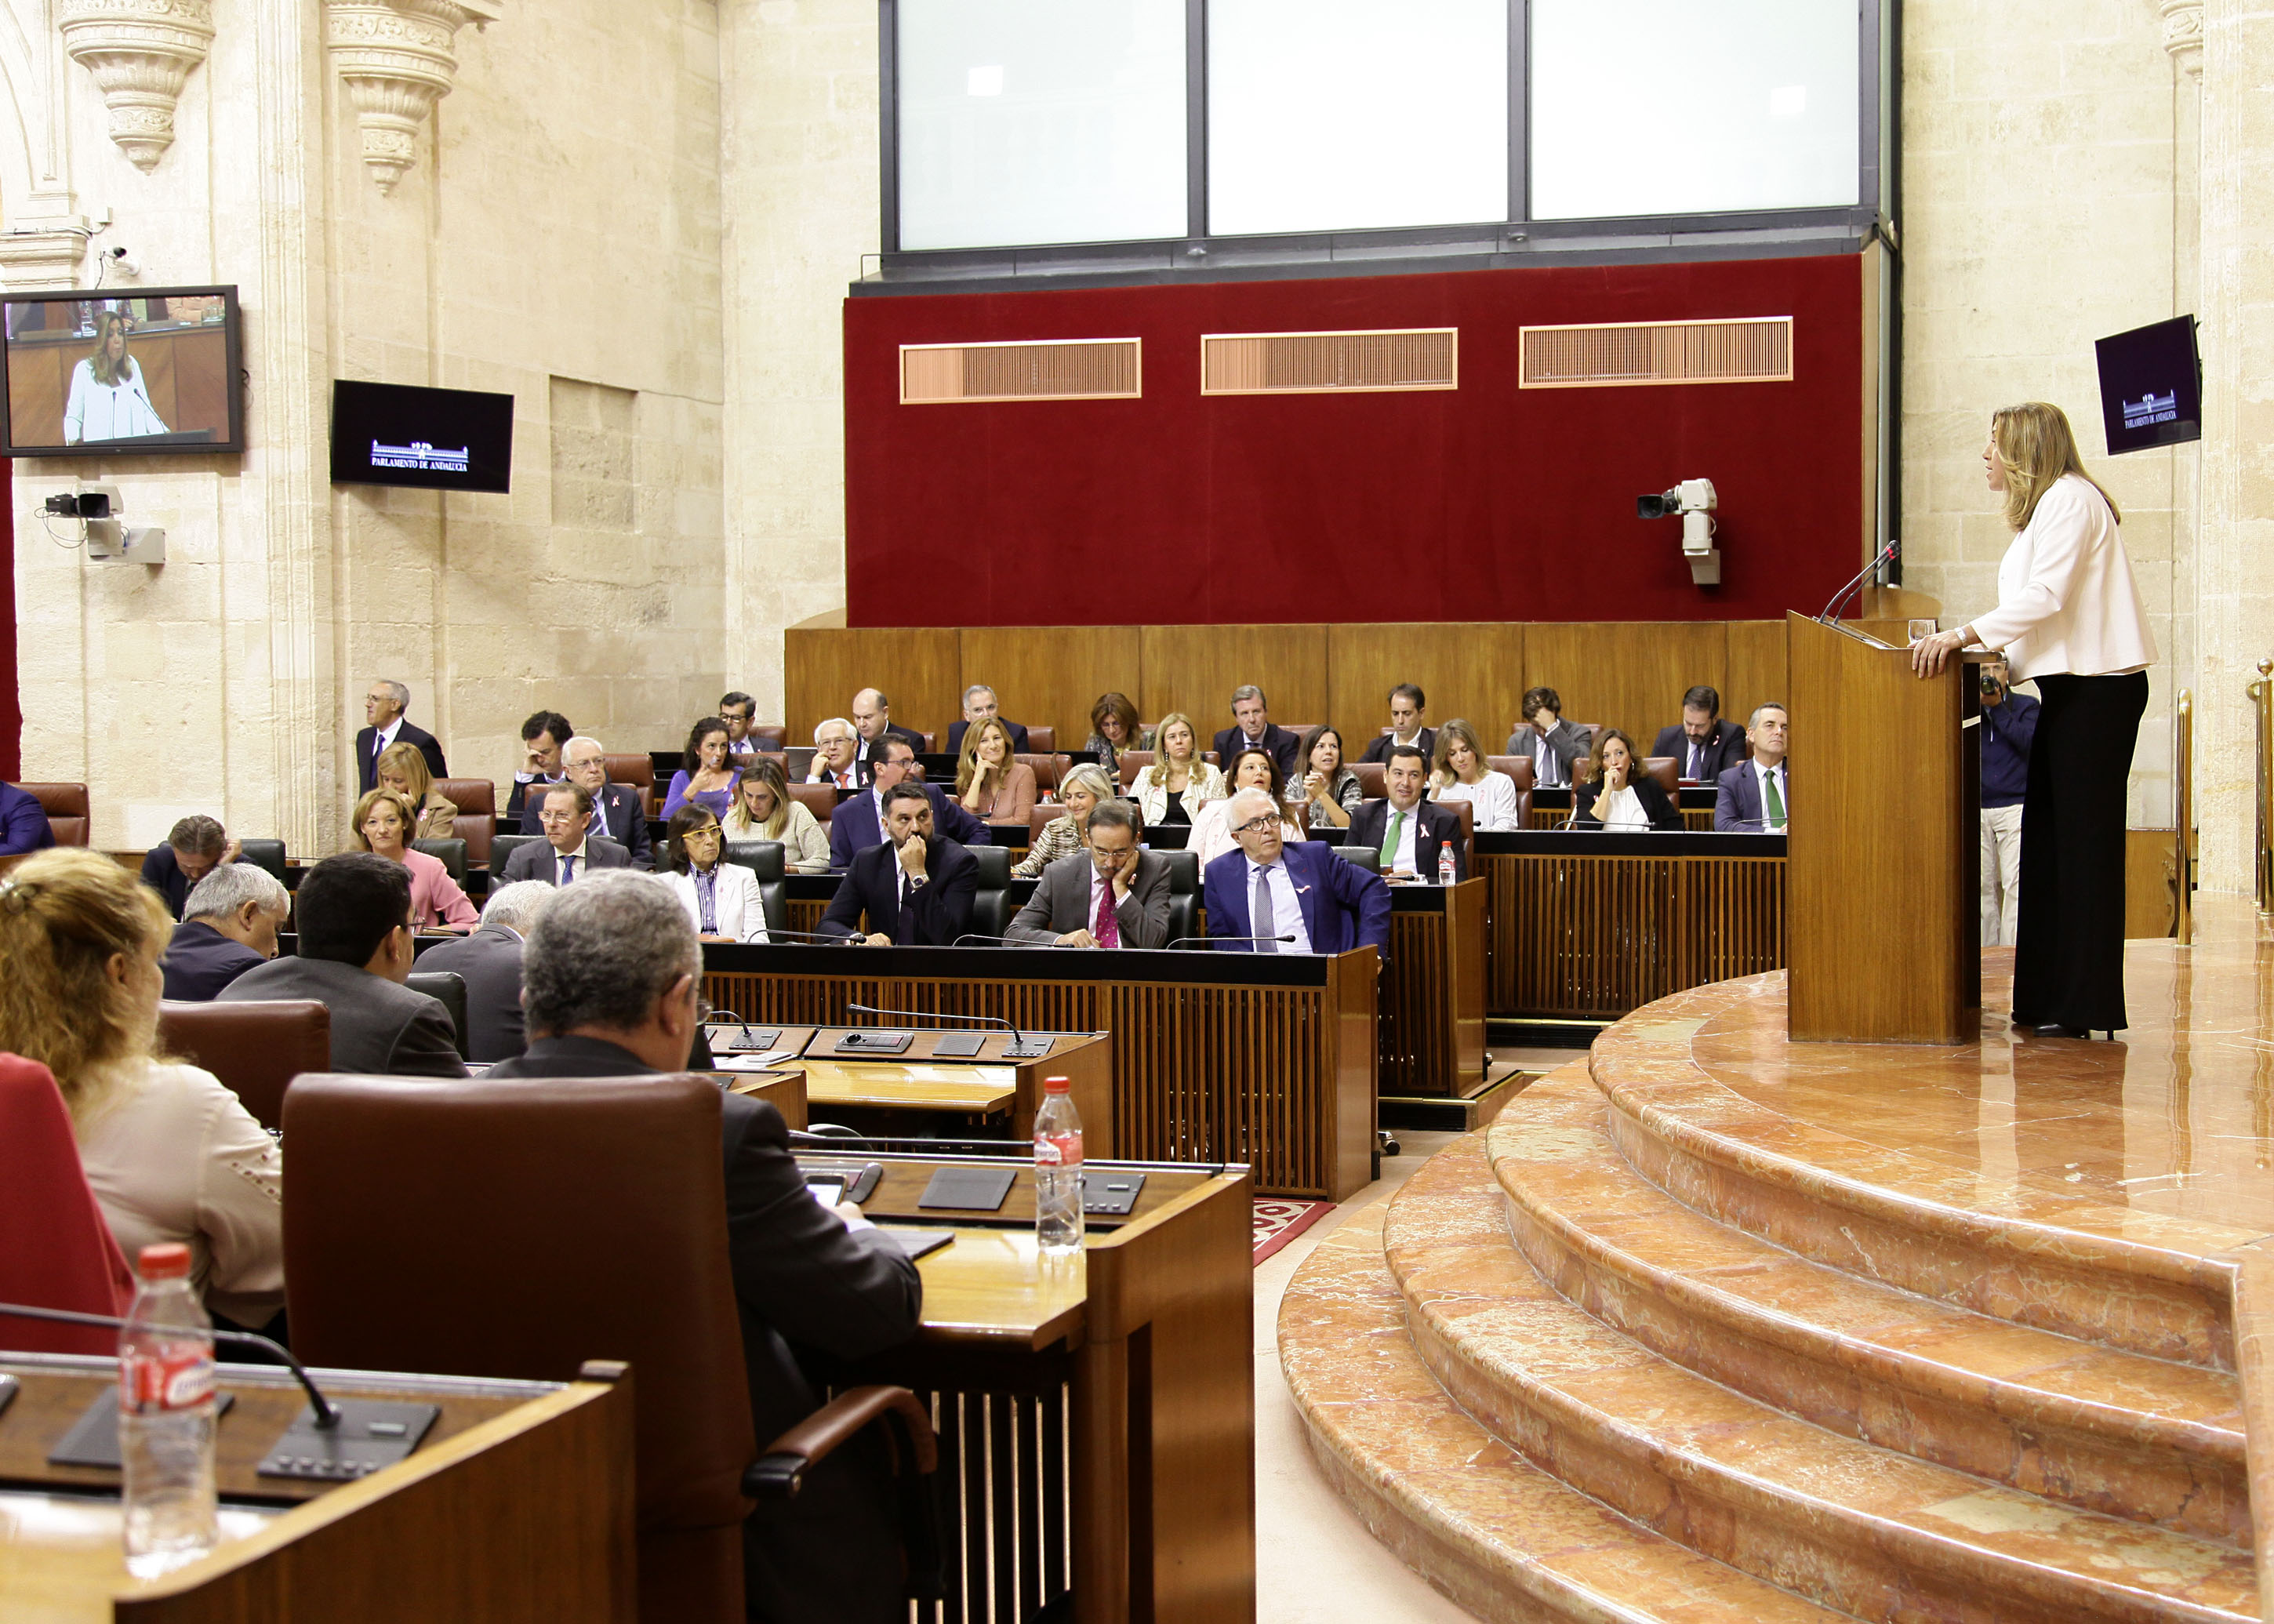 La bancada del Grupo parlamentario Popular, durante el discurso de la presidenta de la Junta de Andaluca